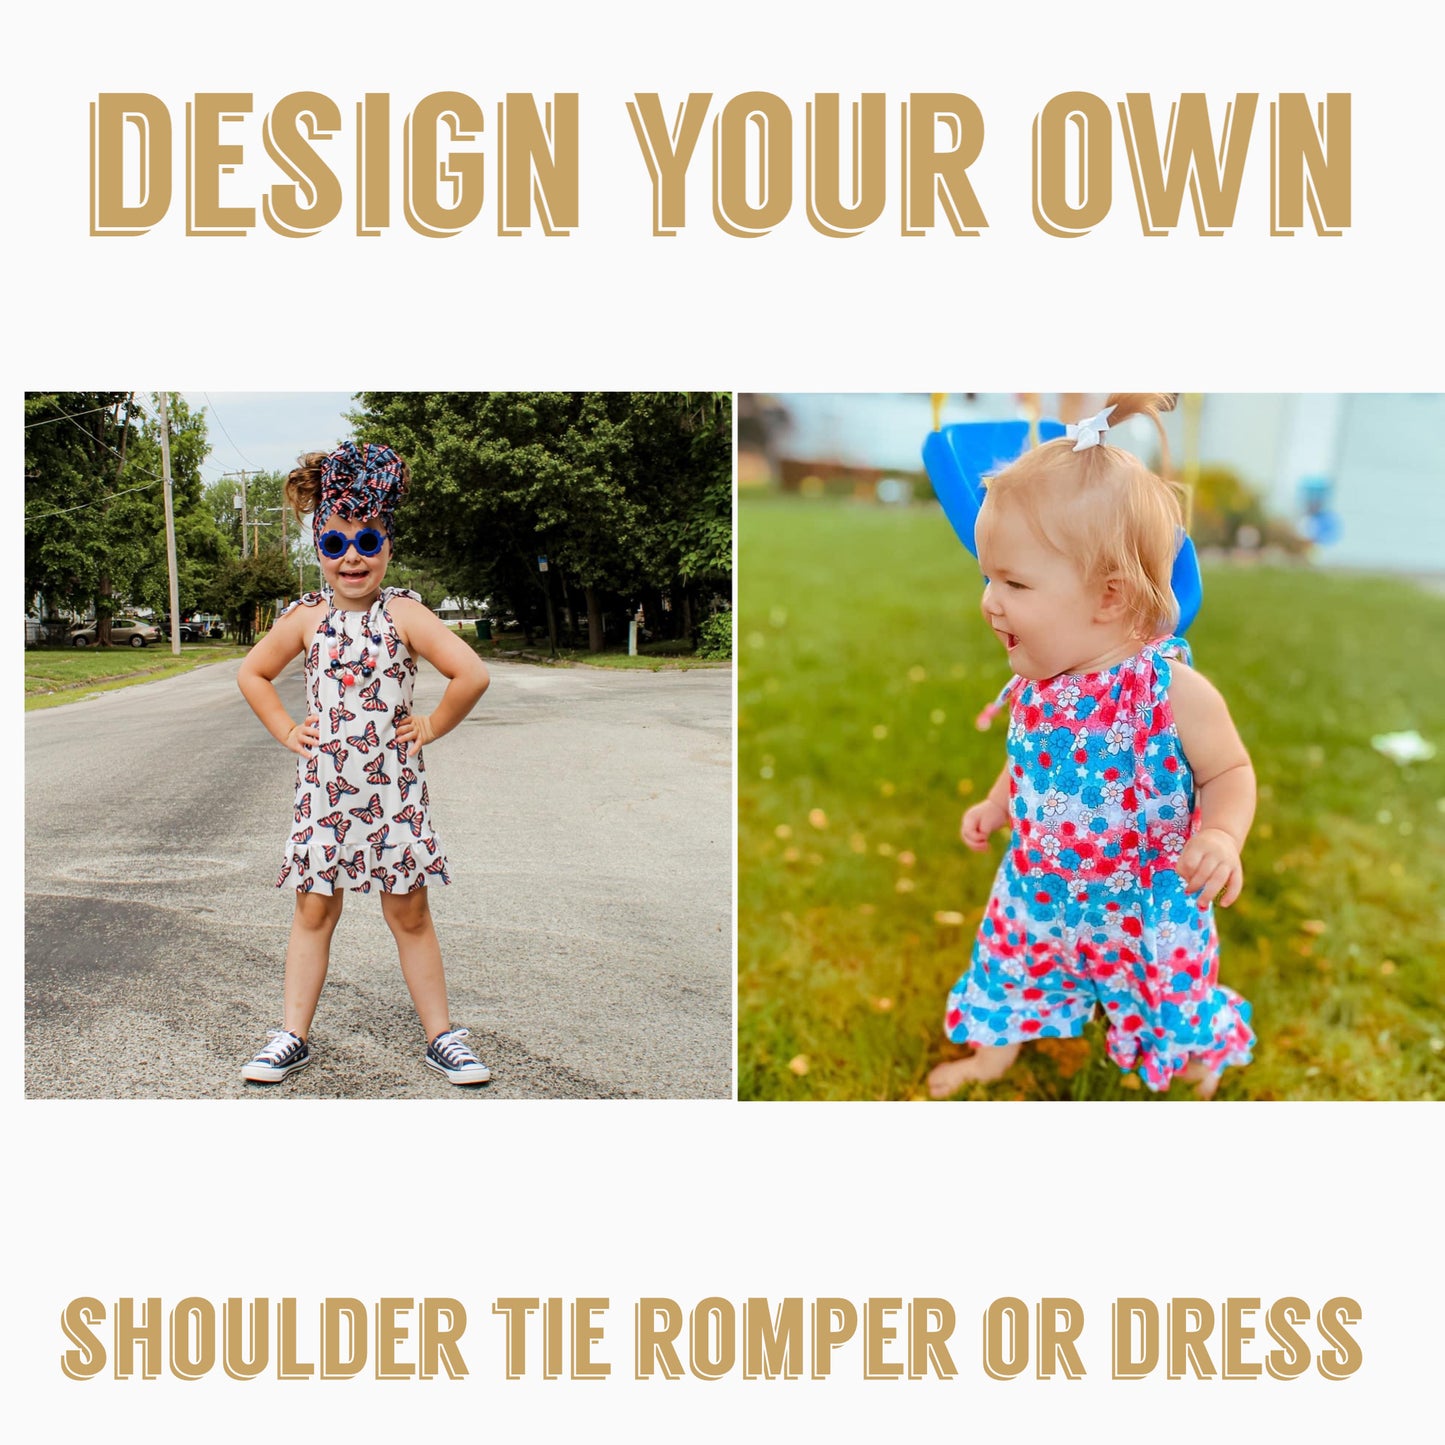 Design your own | Shoulder tie romper or dress